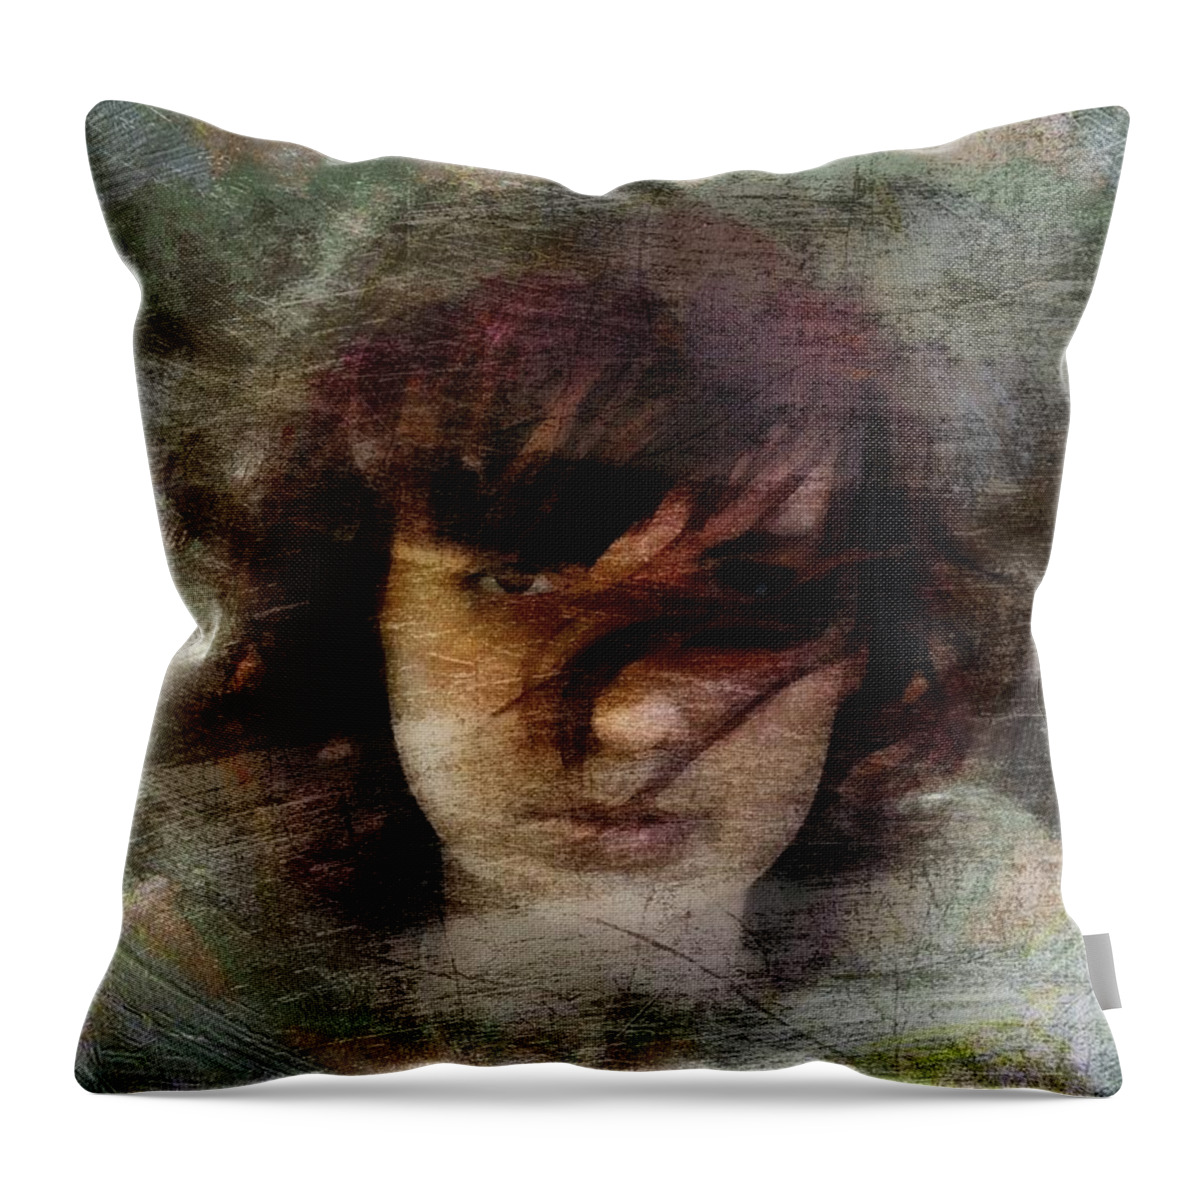 Girl Throw Pillow featuring the digital art Her dark story by Gun Legler